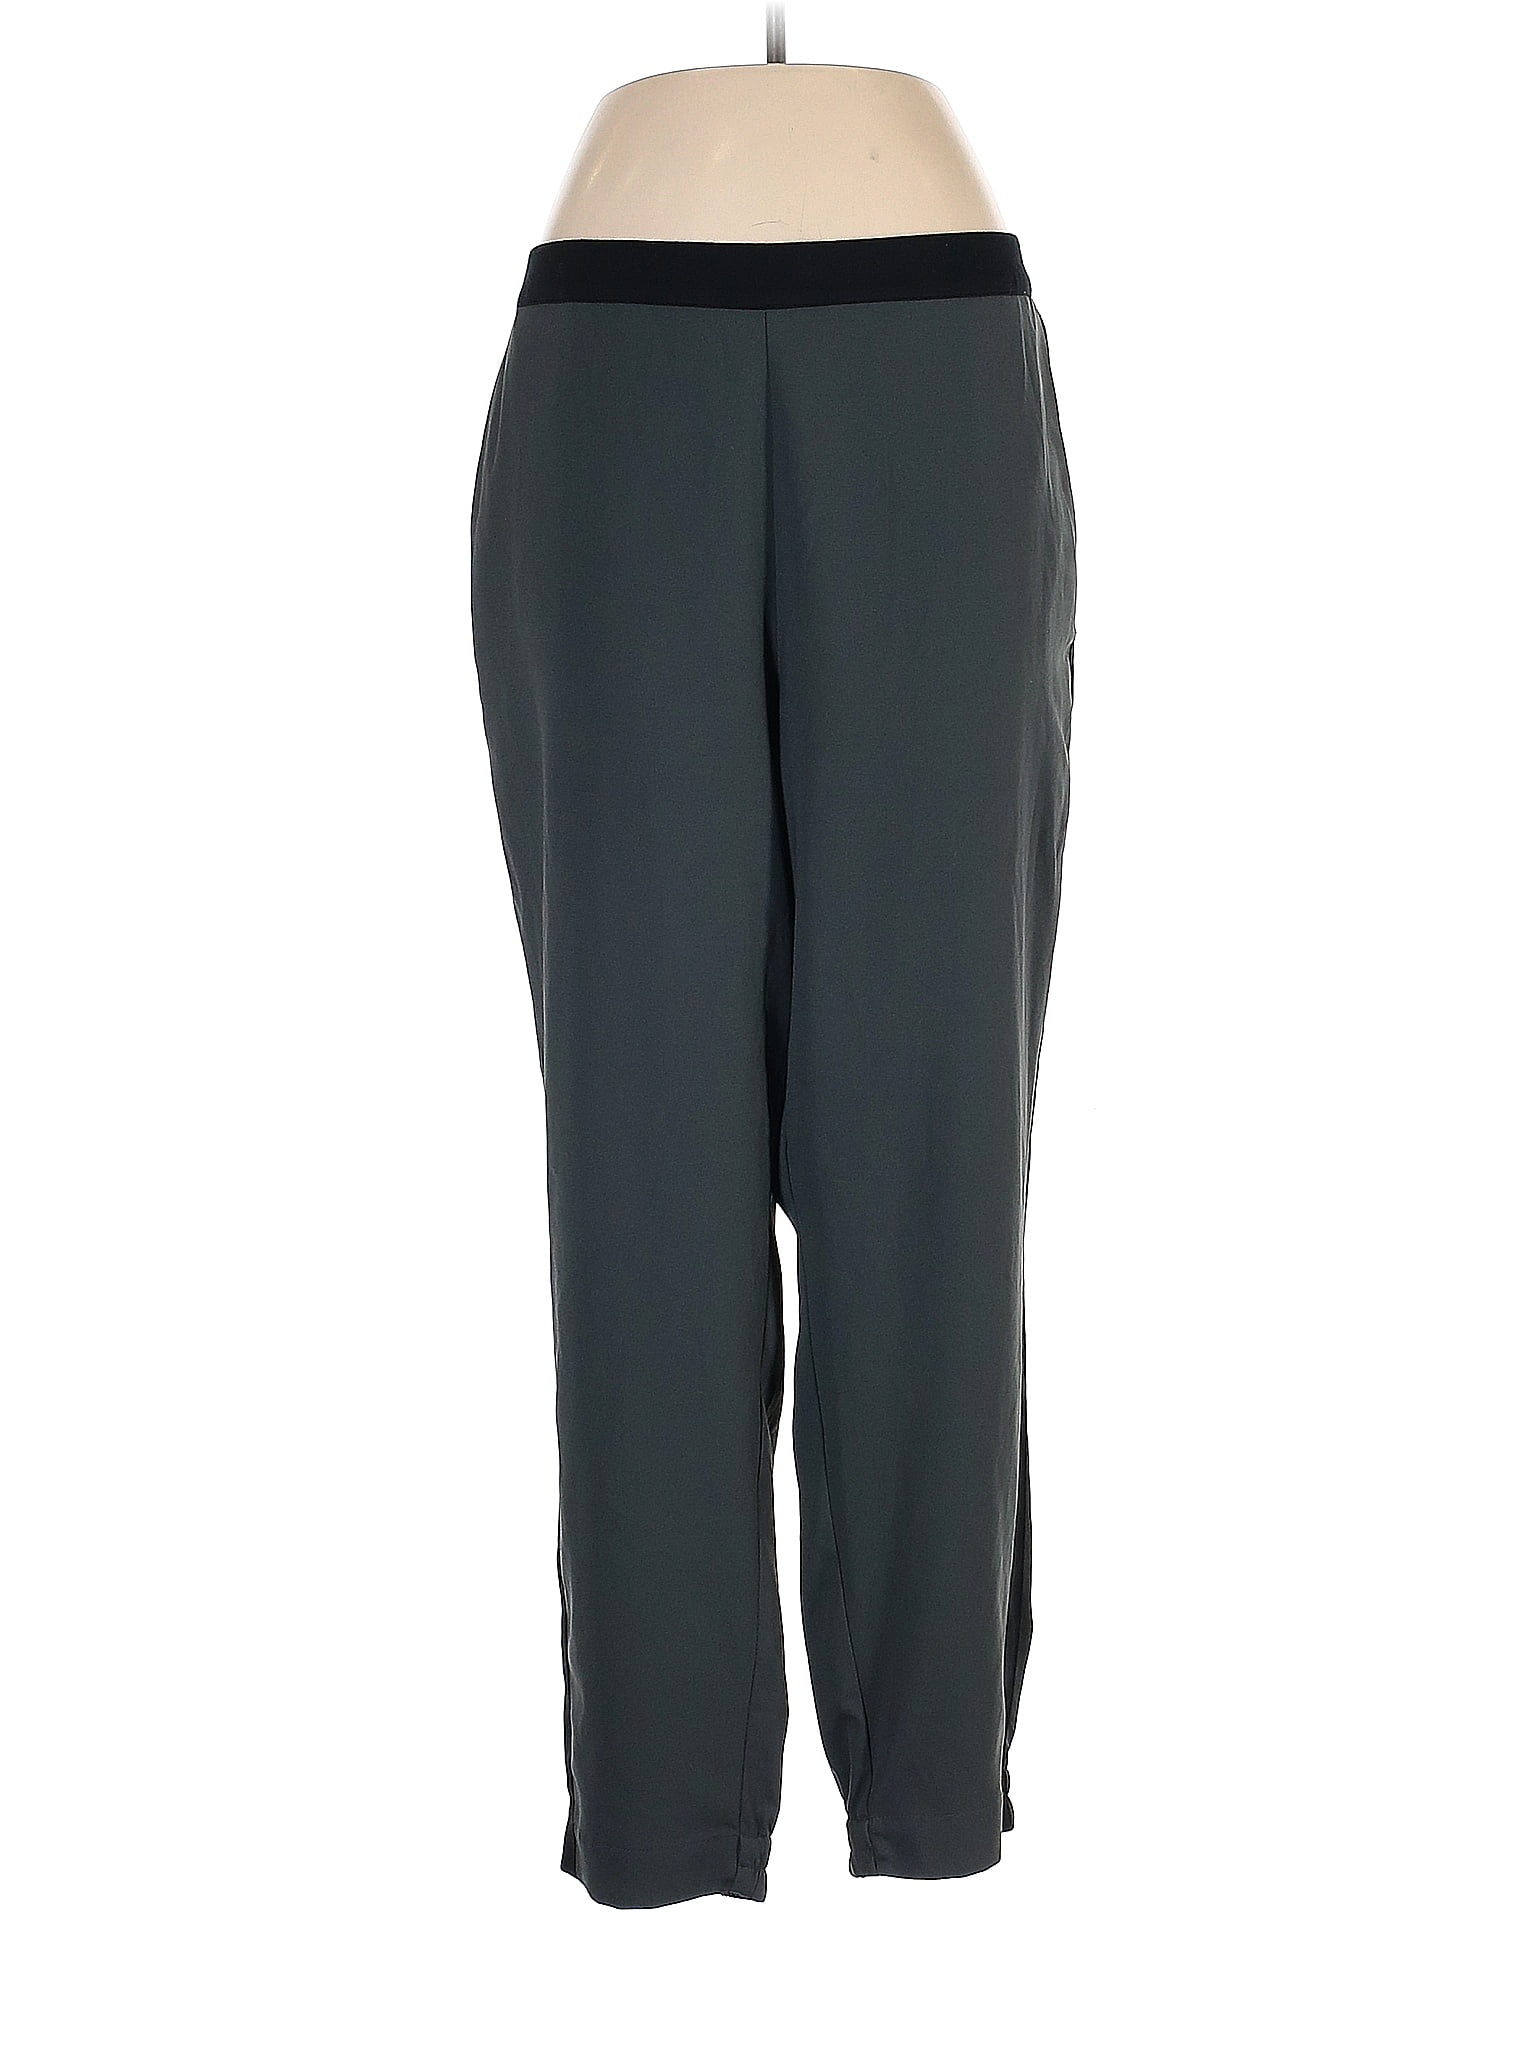 Simply Vera Vera Wang Gray Casual Pants Size XL - 51% off | thredUP